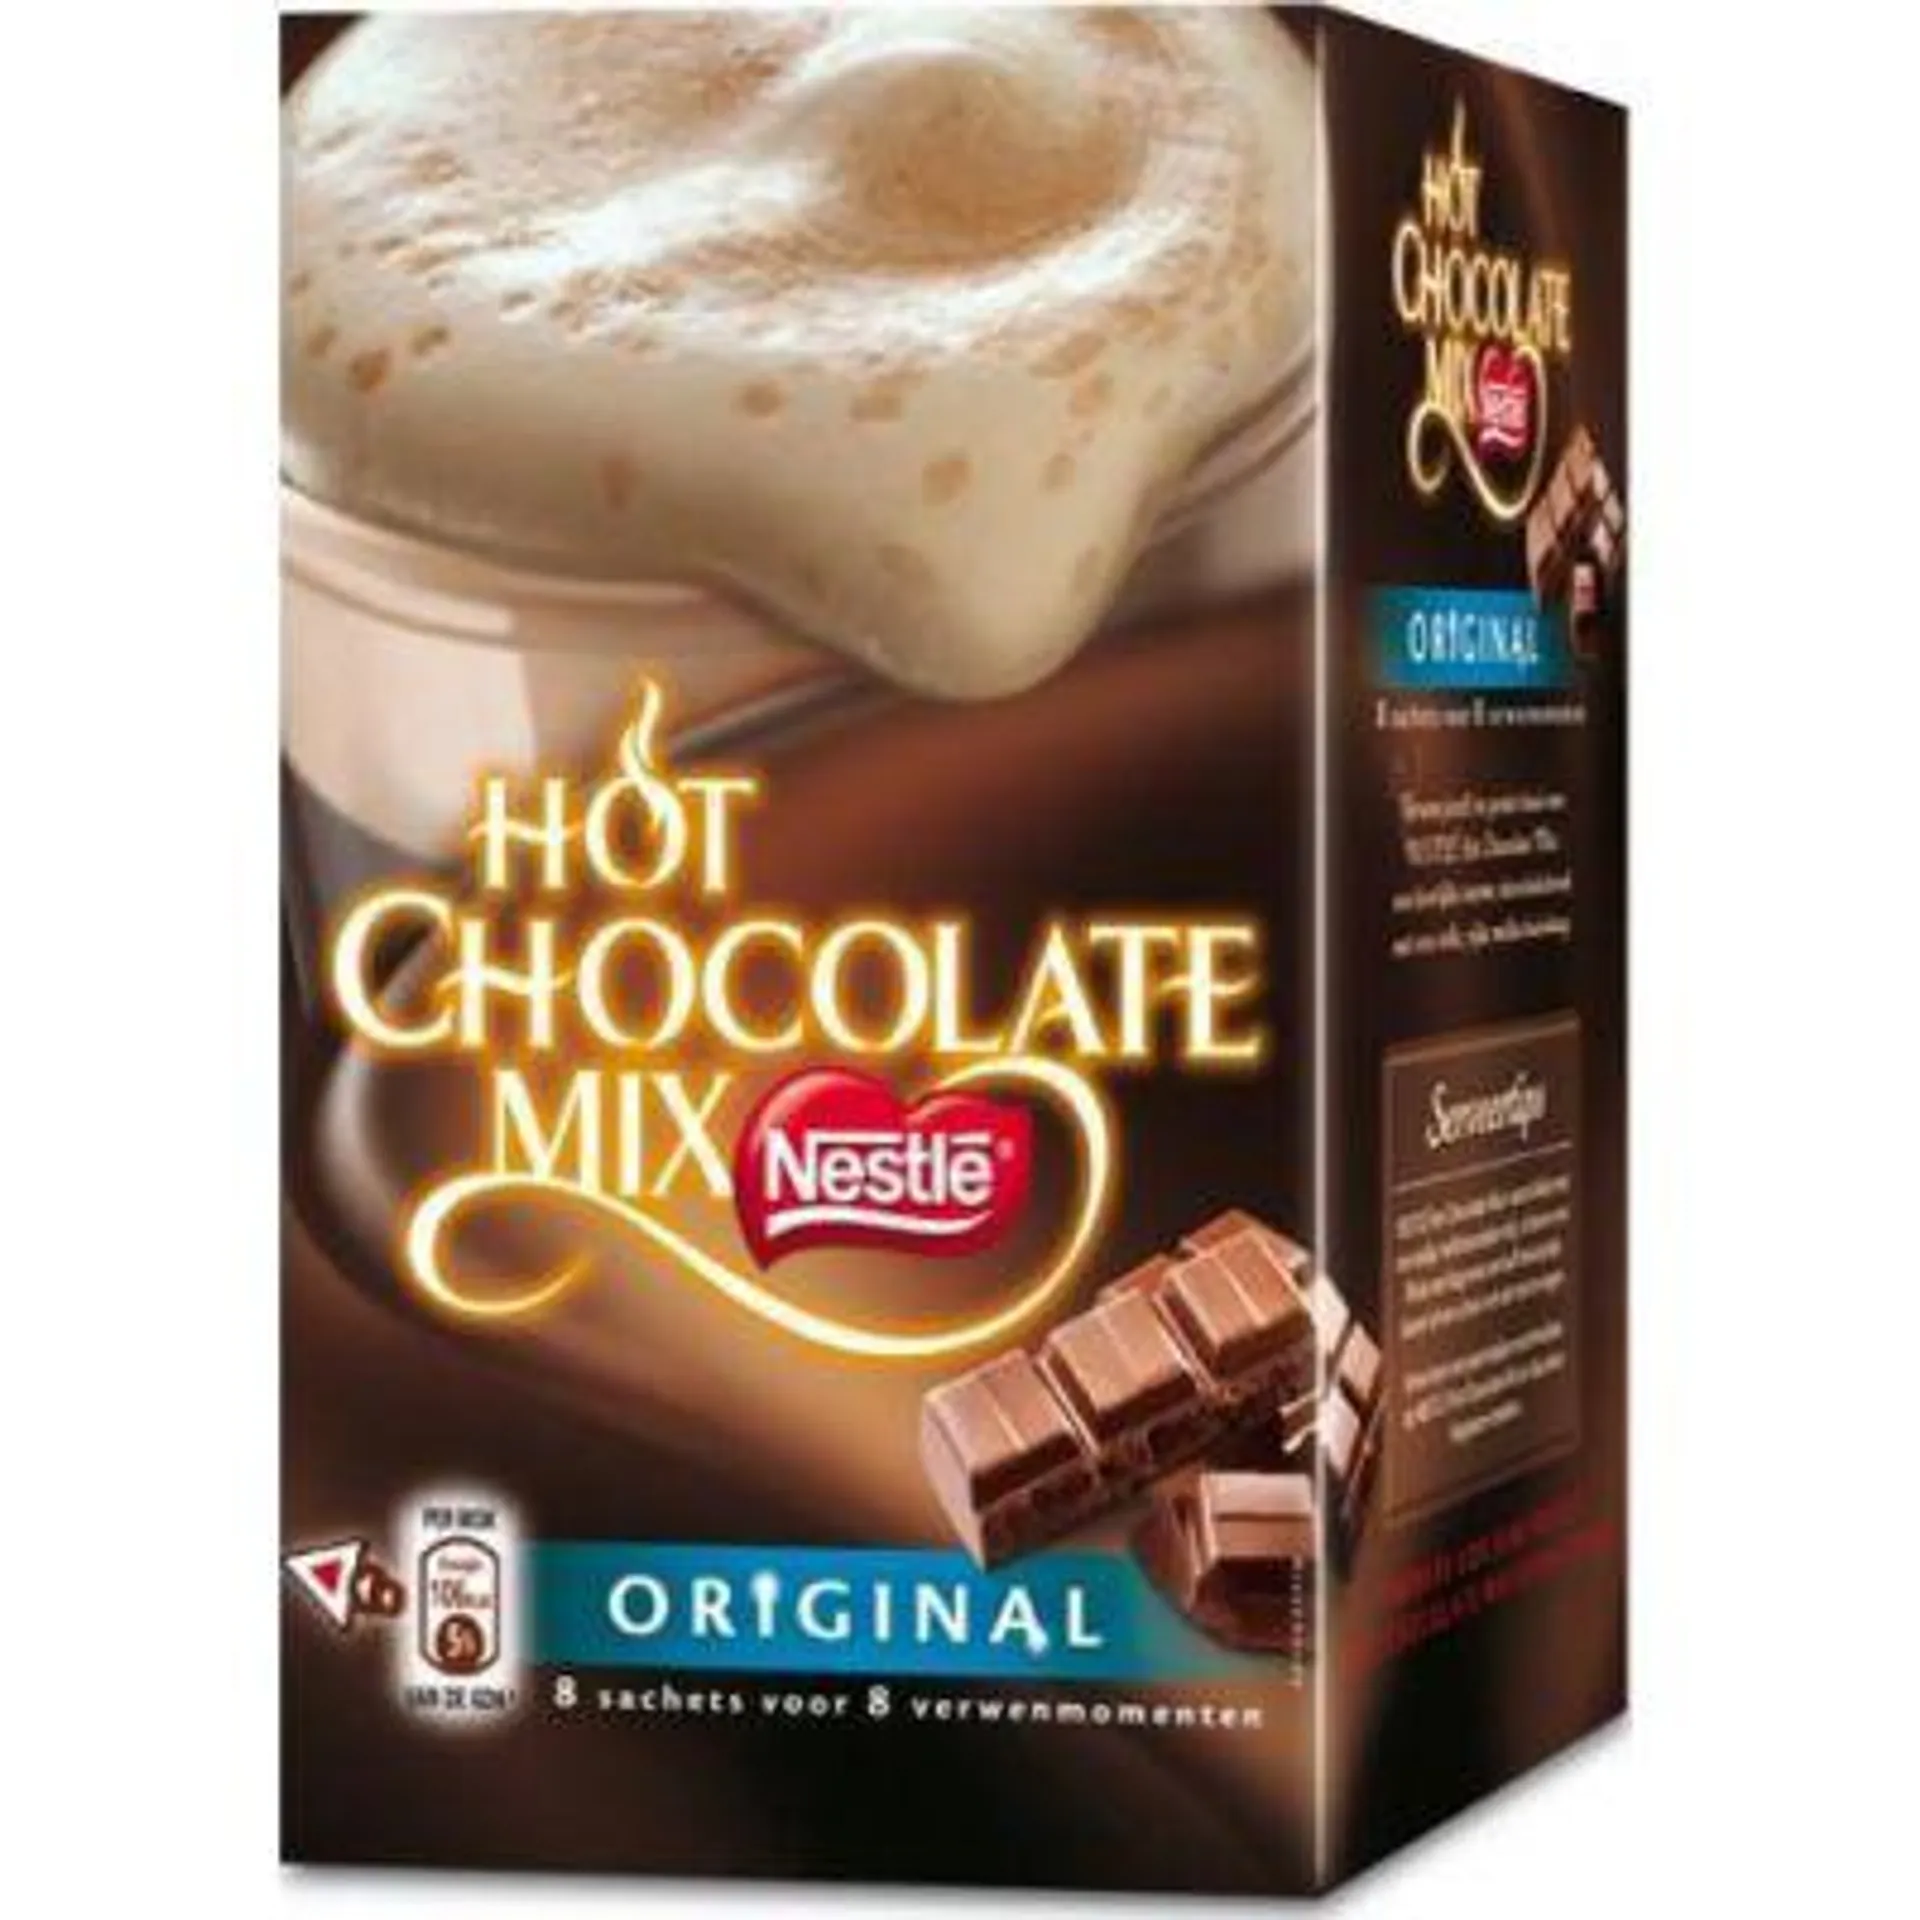 Nestlé Hot chocolate mix original